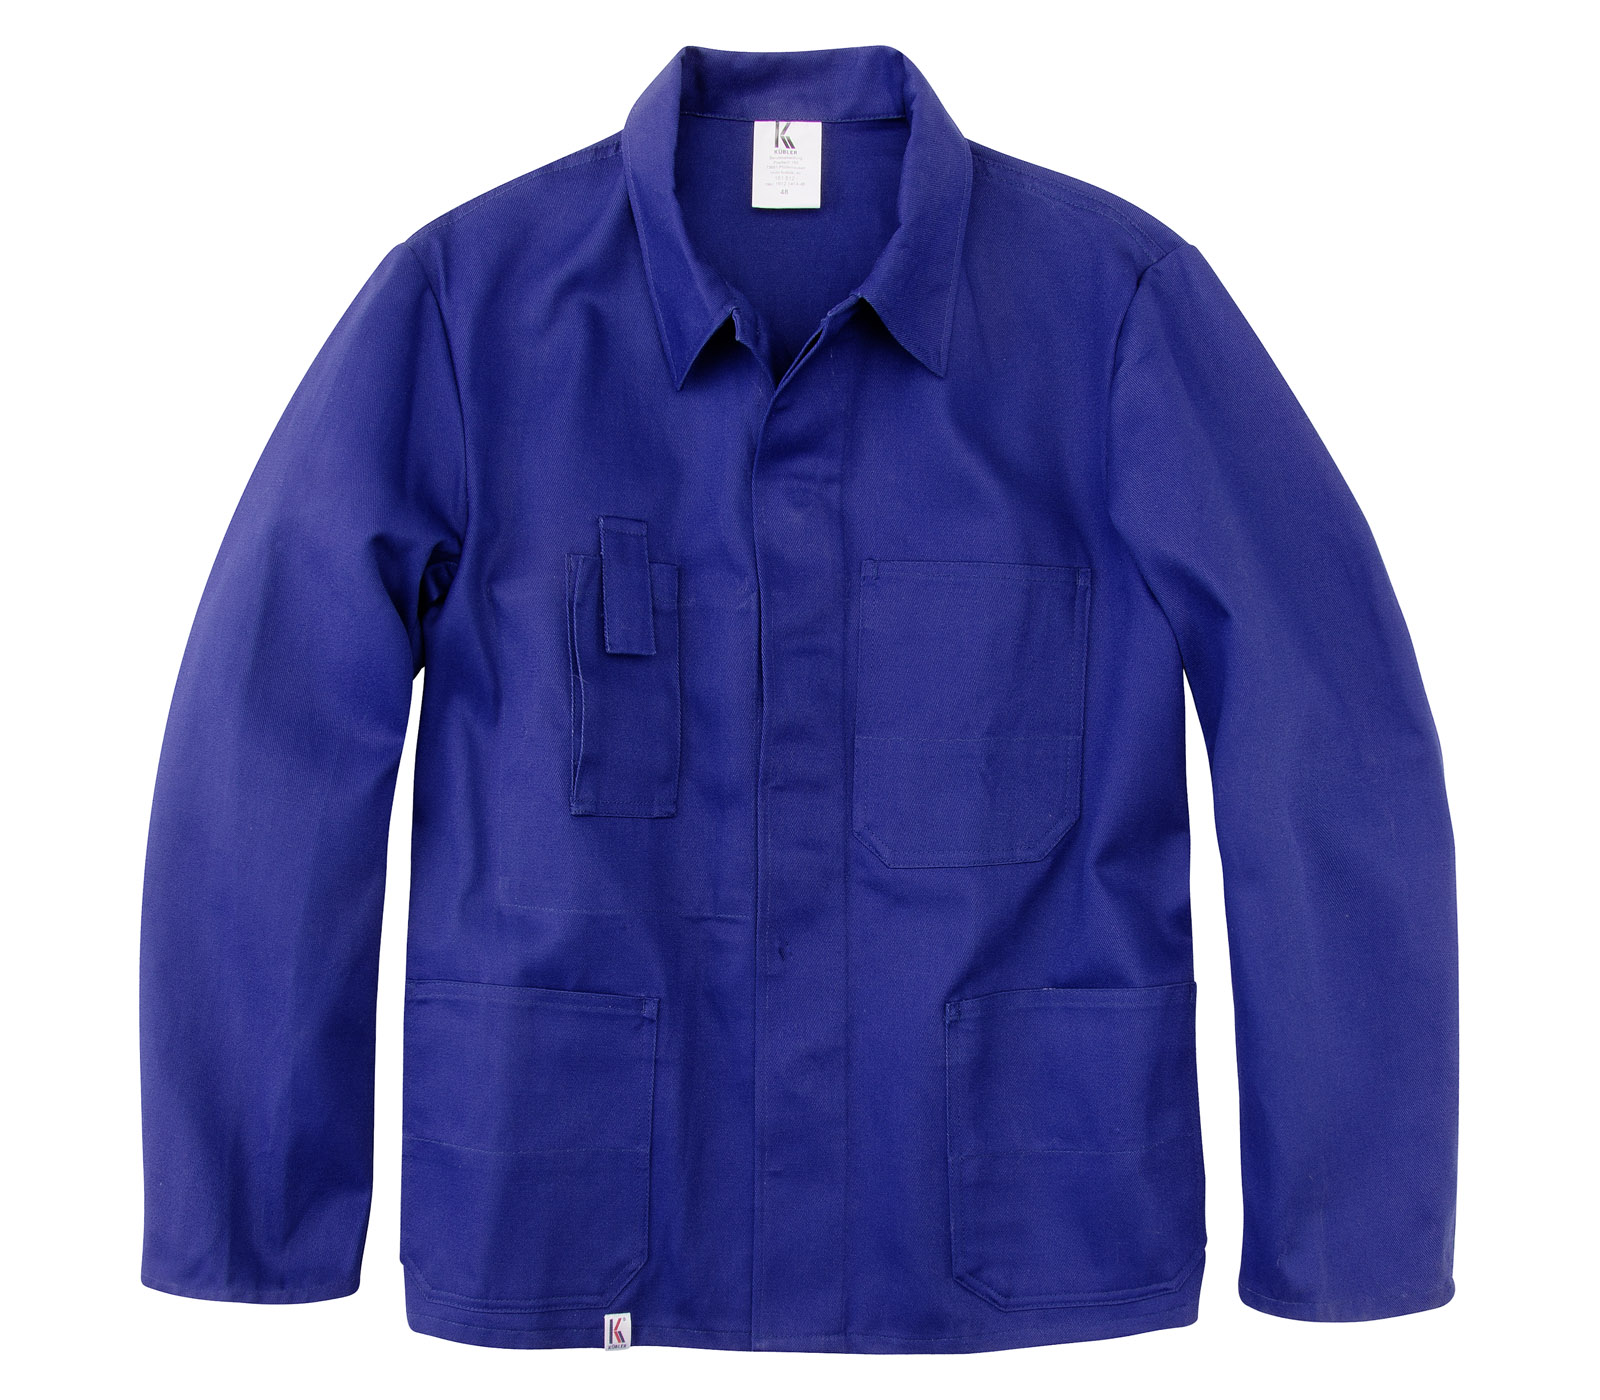 KÜBLER Bundjacke Arbeitsjacke Berufsjacke Schutzjacke Arbeitskleidung Berufskleidung kornblau